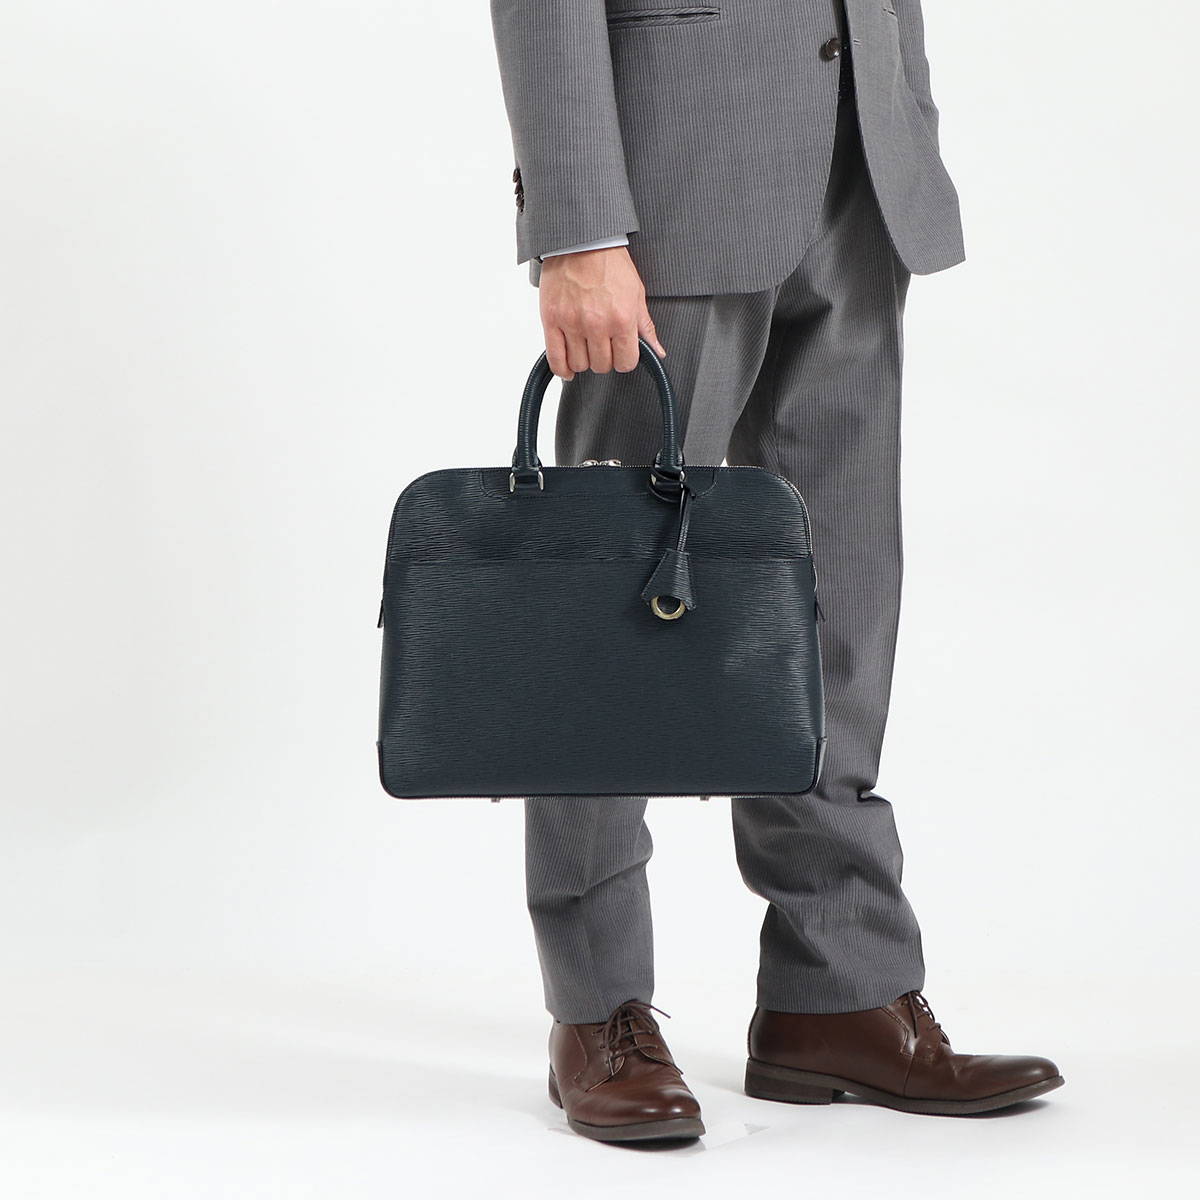 アニアリ／aniary バッグ ブリーフケース ビジネスバッグ 鞄 ビジネス メンズ 男性 男性用レザー 革 本革 グレー 灰色  16-01000 迷彩・カモフラージュ柄